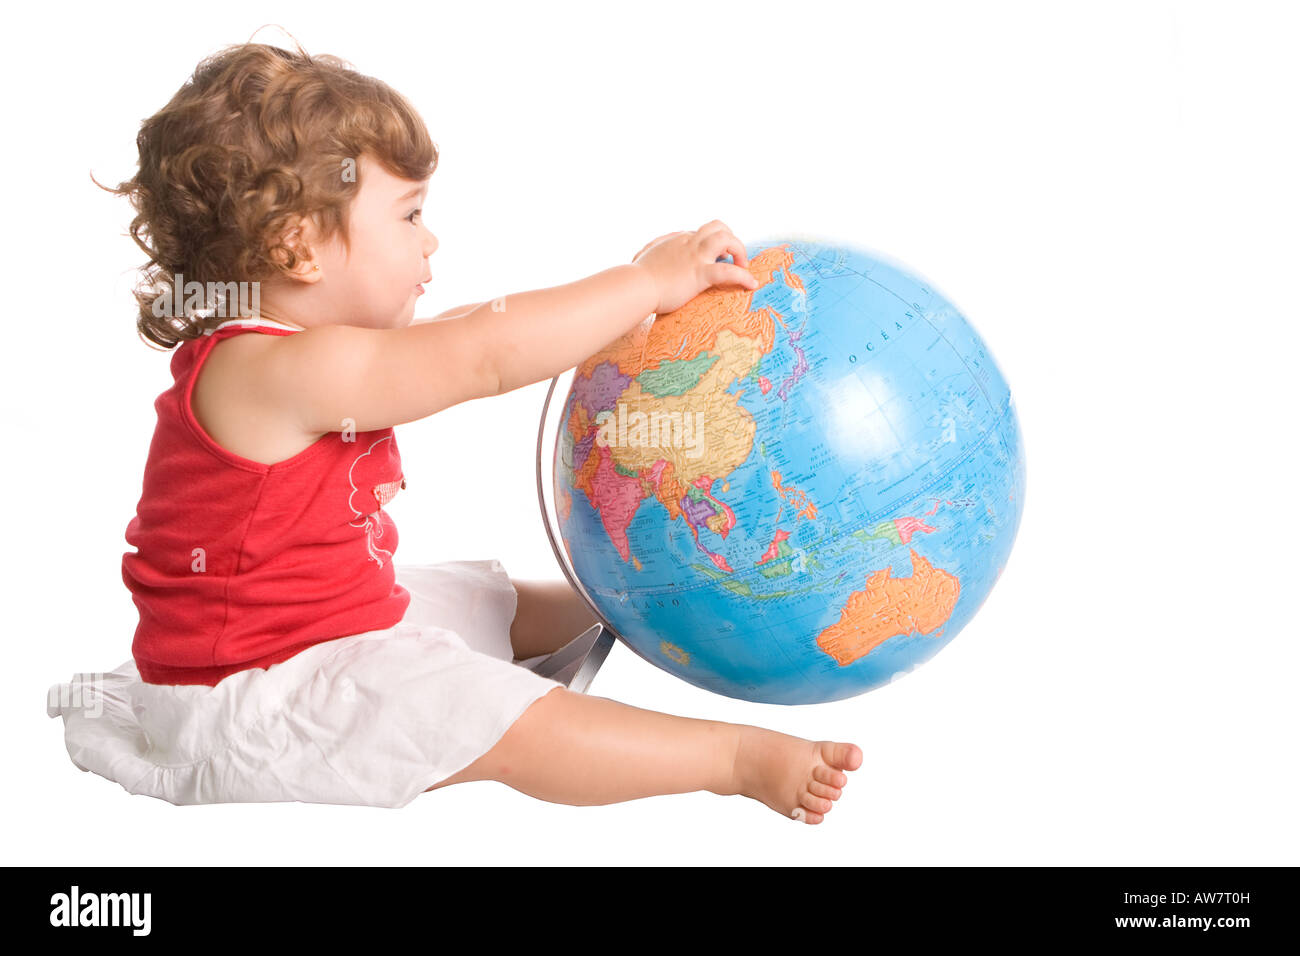 Junge Mädchen spielen mit einem Welt Globus Karte Profil isoliert auf weiss Stockfoto